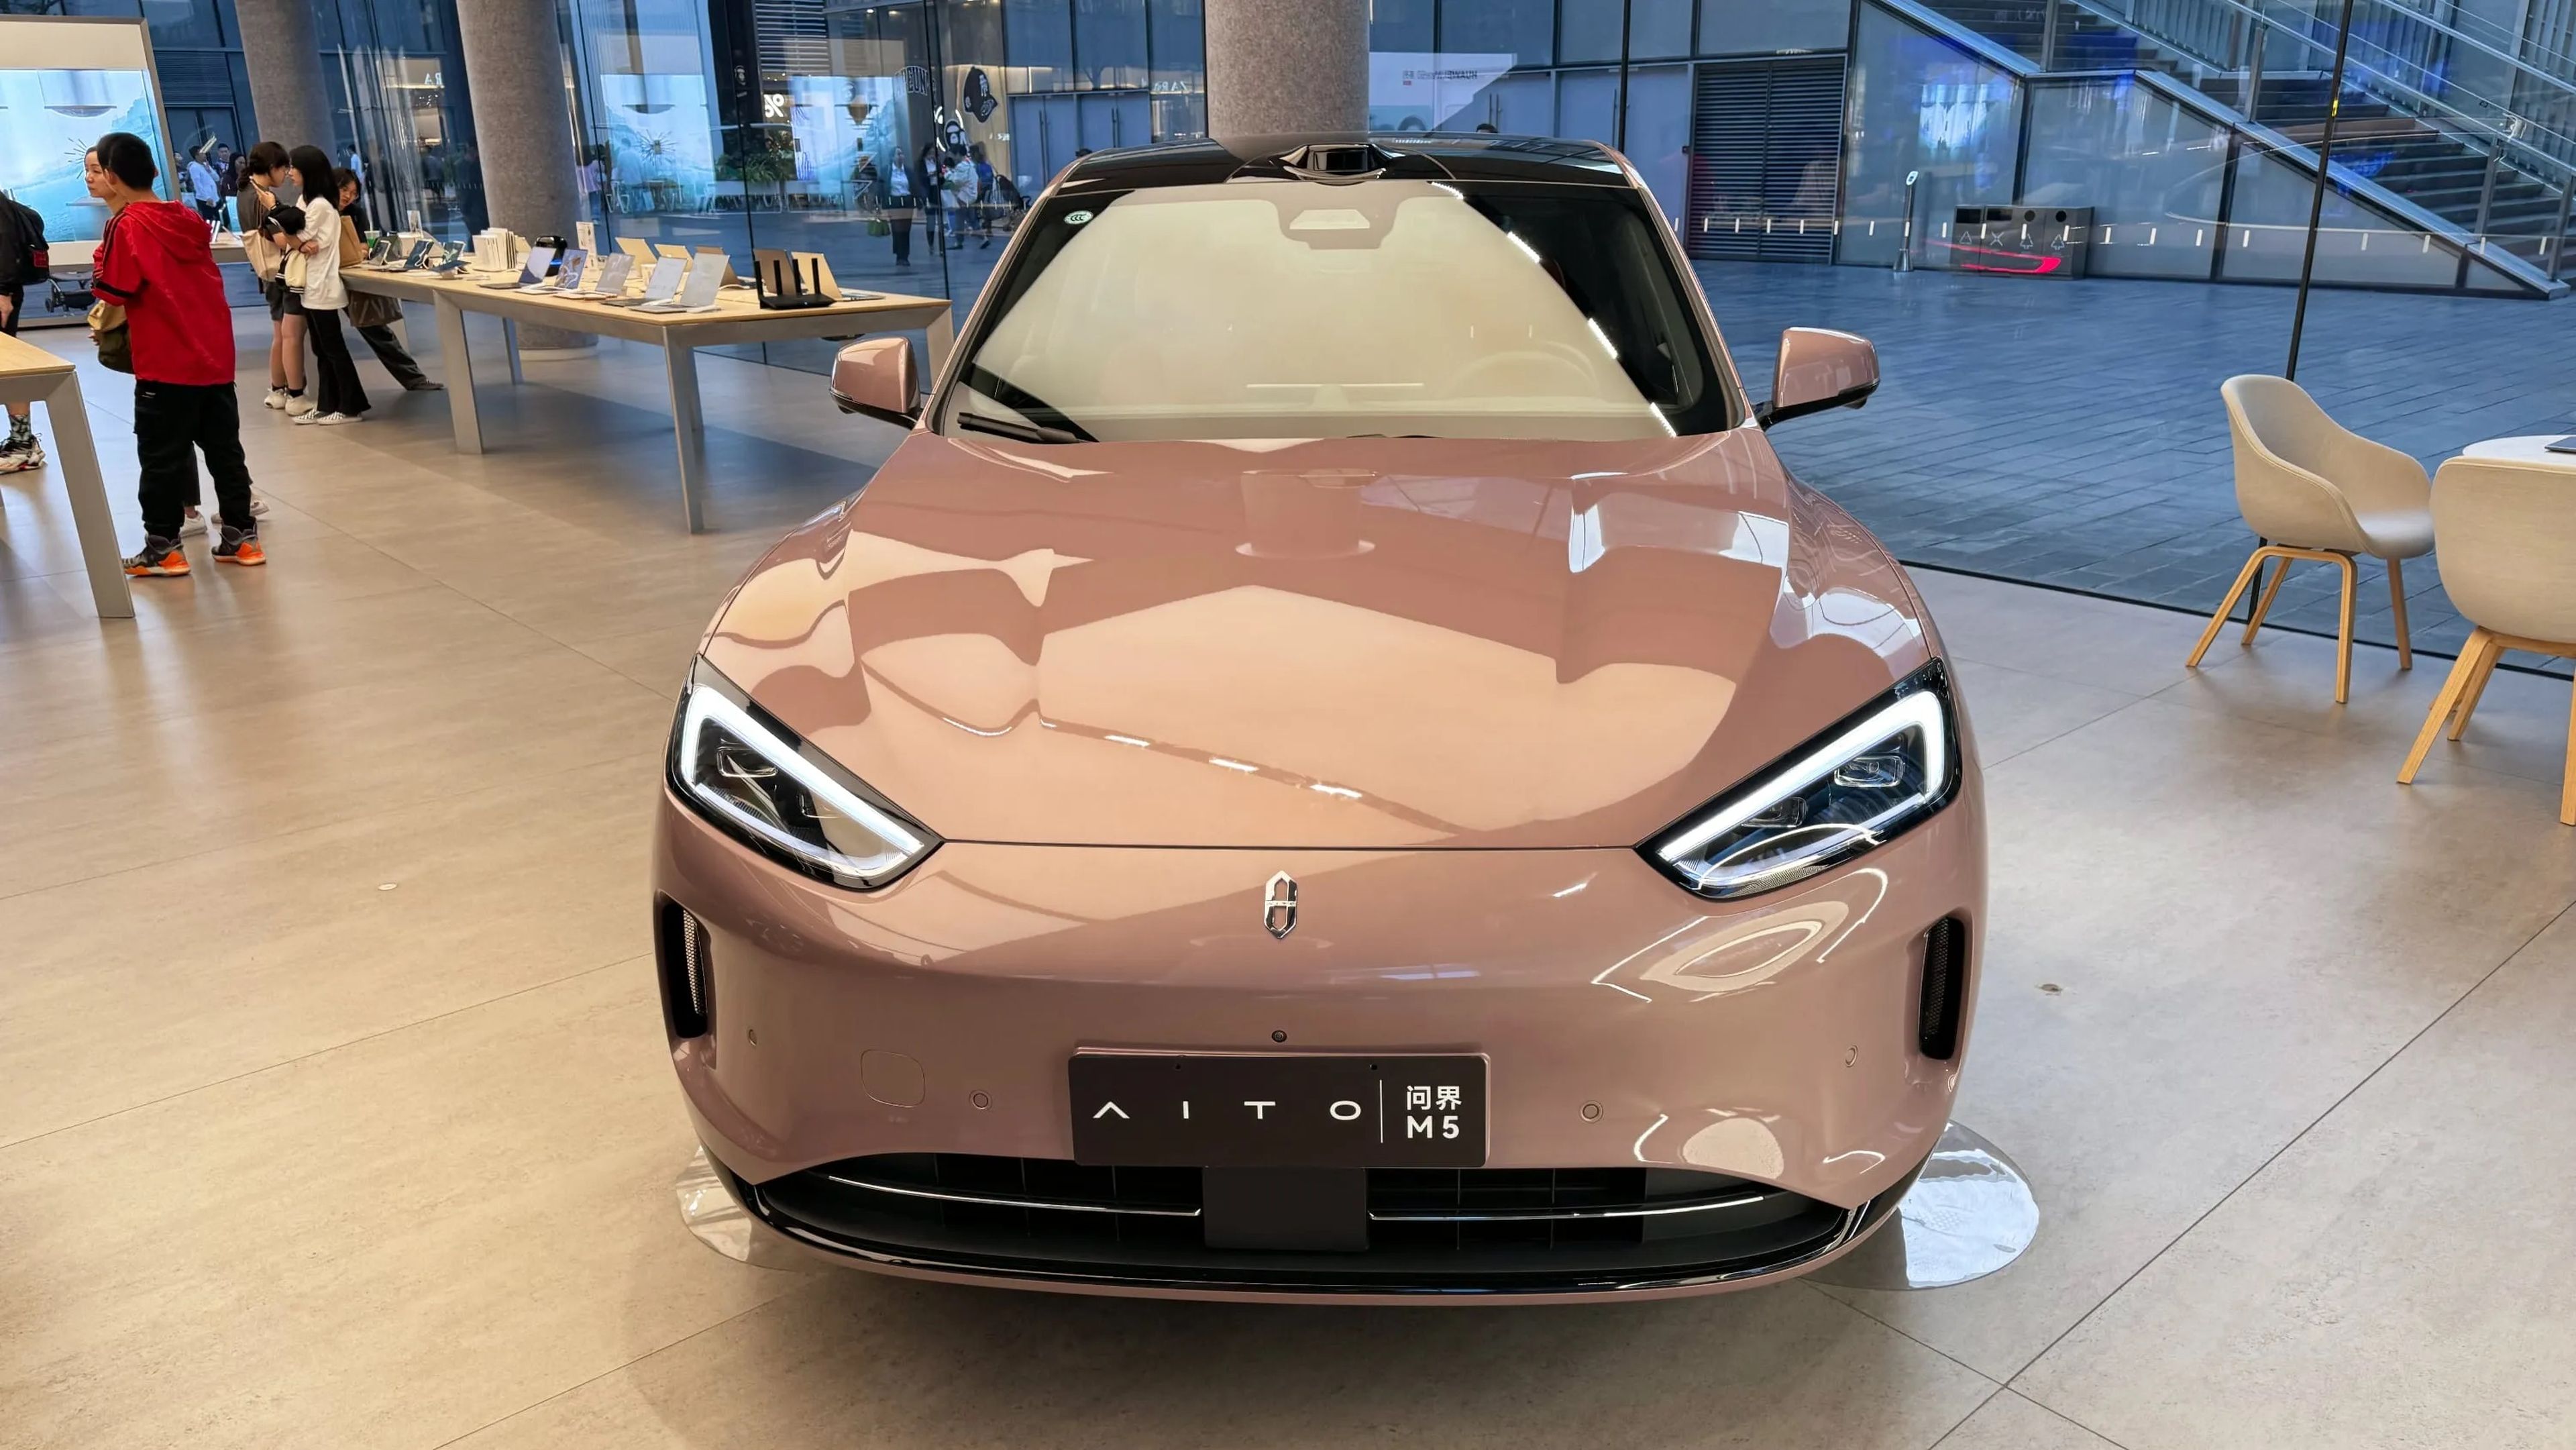 Aito M5, coche eléctrico de Huawei